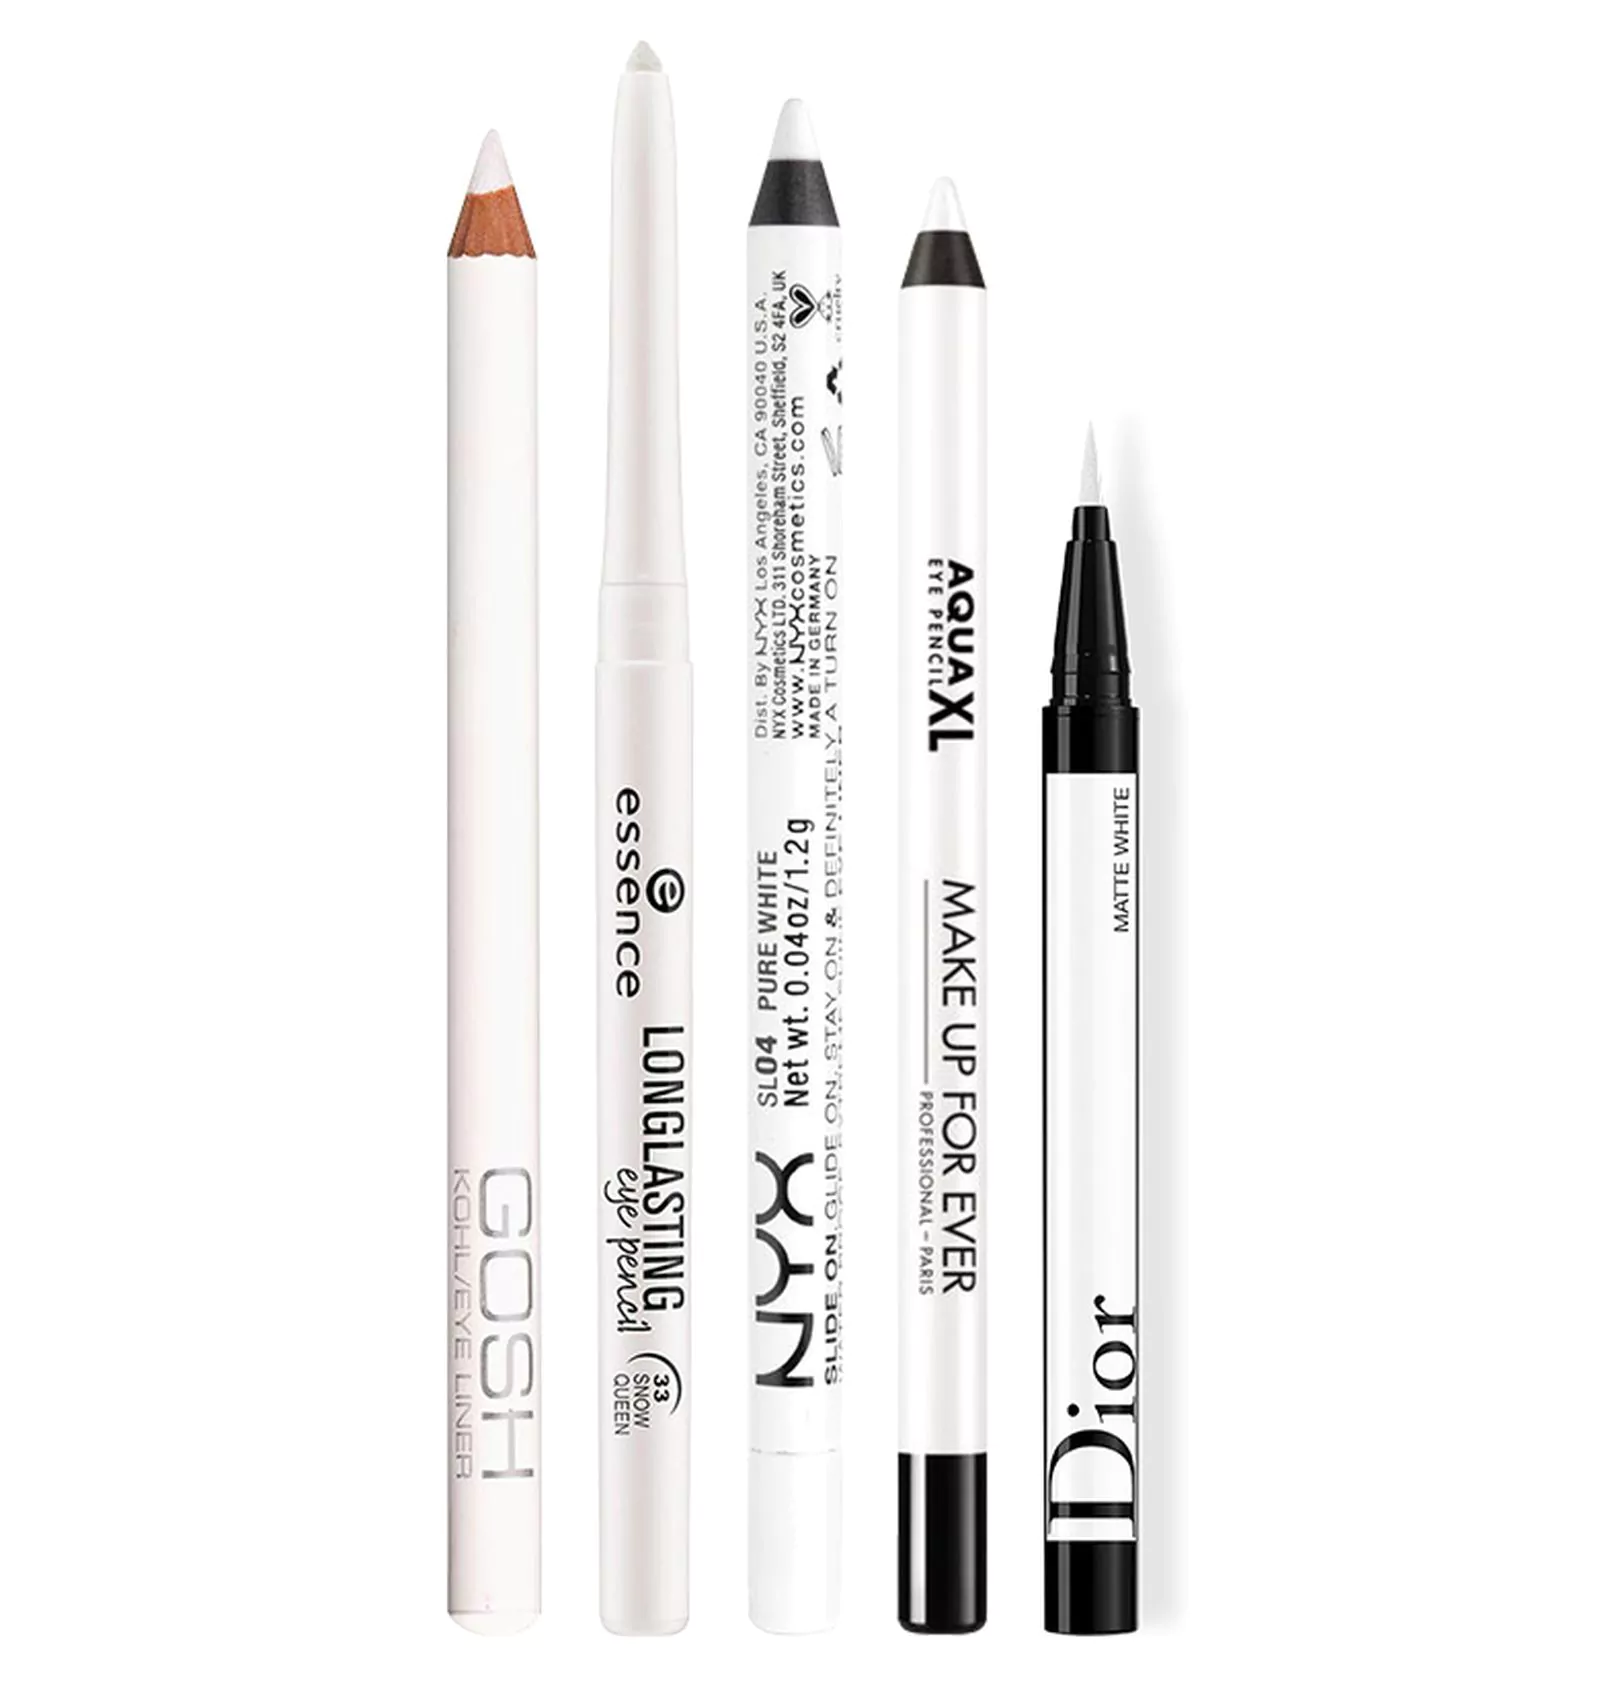 Gosh Eye pencil, Essence Eyeliner Pen Longlasting, NYX Slide on pencil, Make Up For Ever Aqua XL, Dior Diorshow On Stage Liner